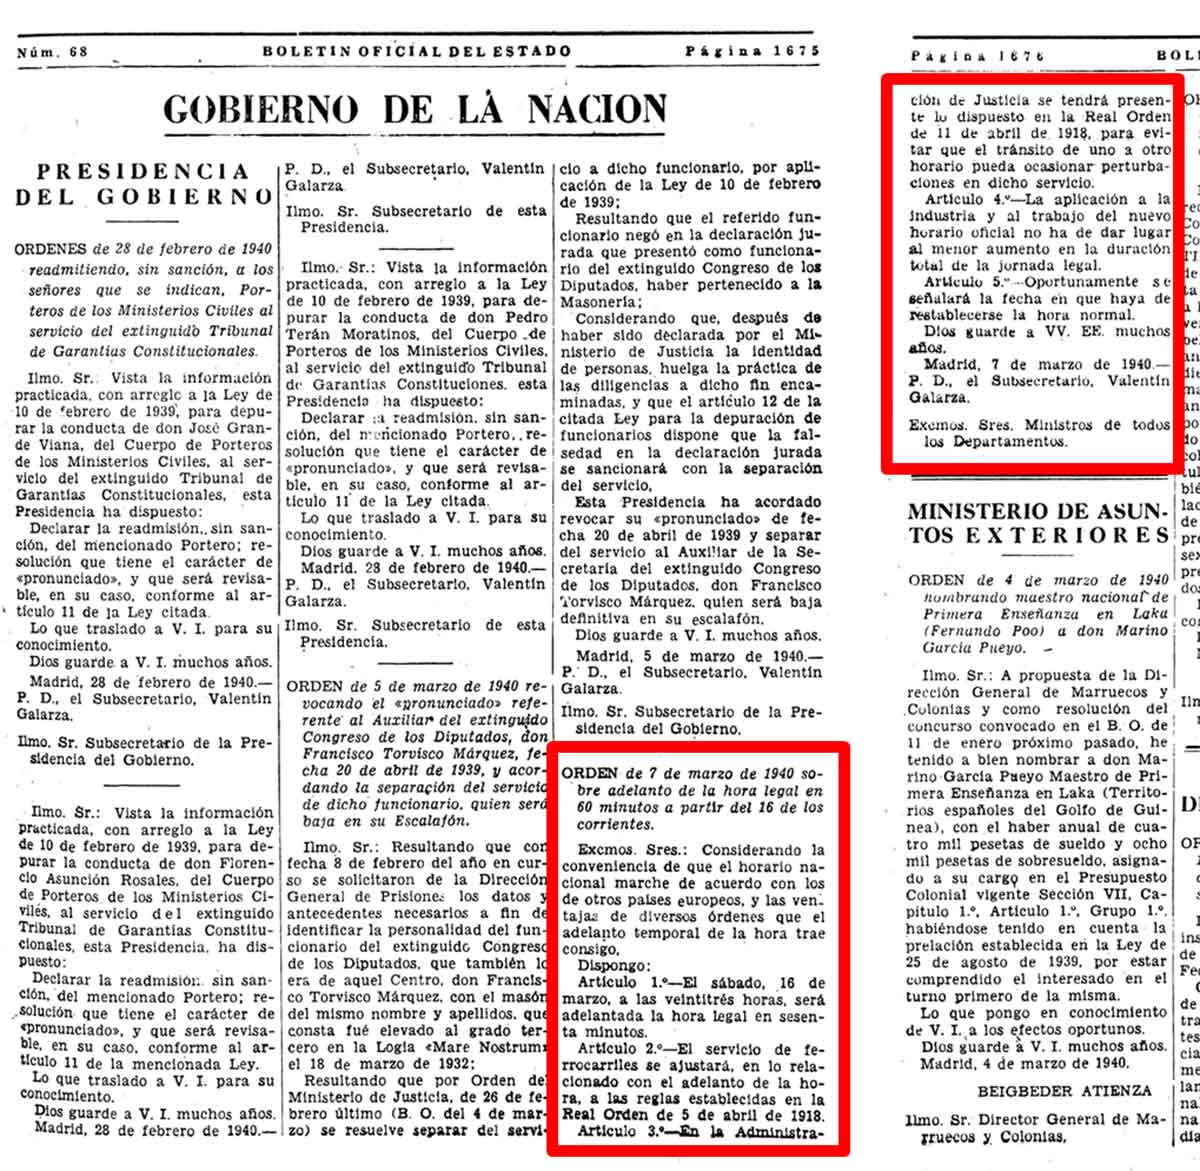 La Orden de Presidencia del 7 de marzo de 1940 para adelantar una hora, supuso que España salió del huso horario.